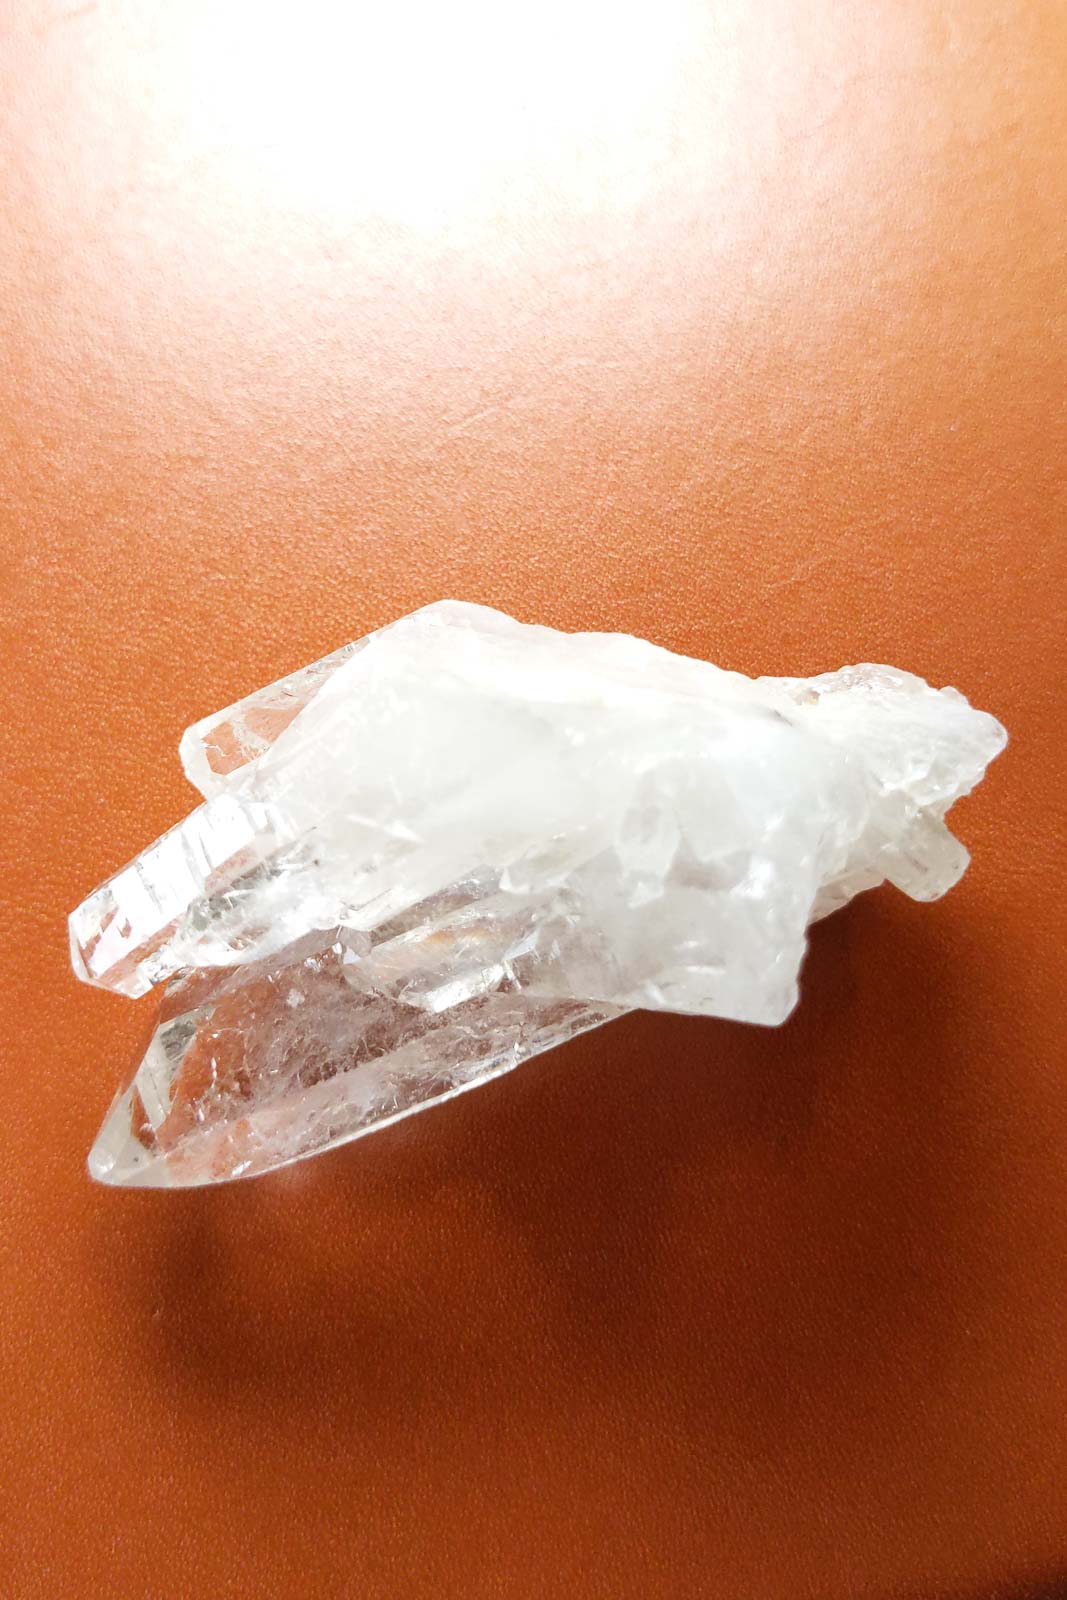 水晶 クリスタル 原石 結晶